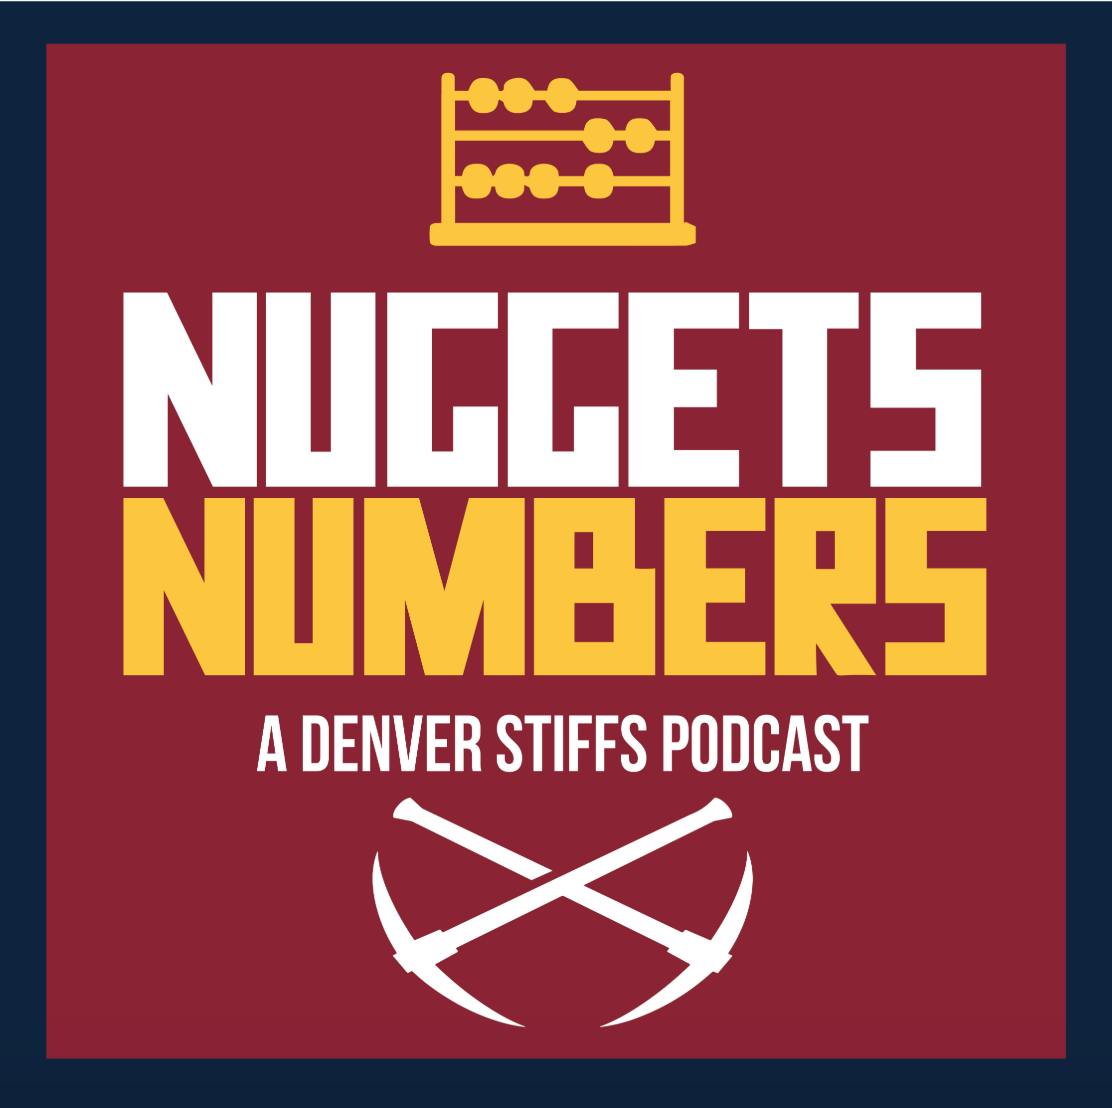 Nuggets Numbers - Torrey Craig vs Will Barton vs Michael Porter Jr. vs Juancho Hernangomez